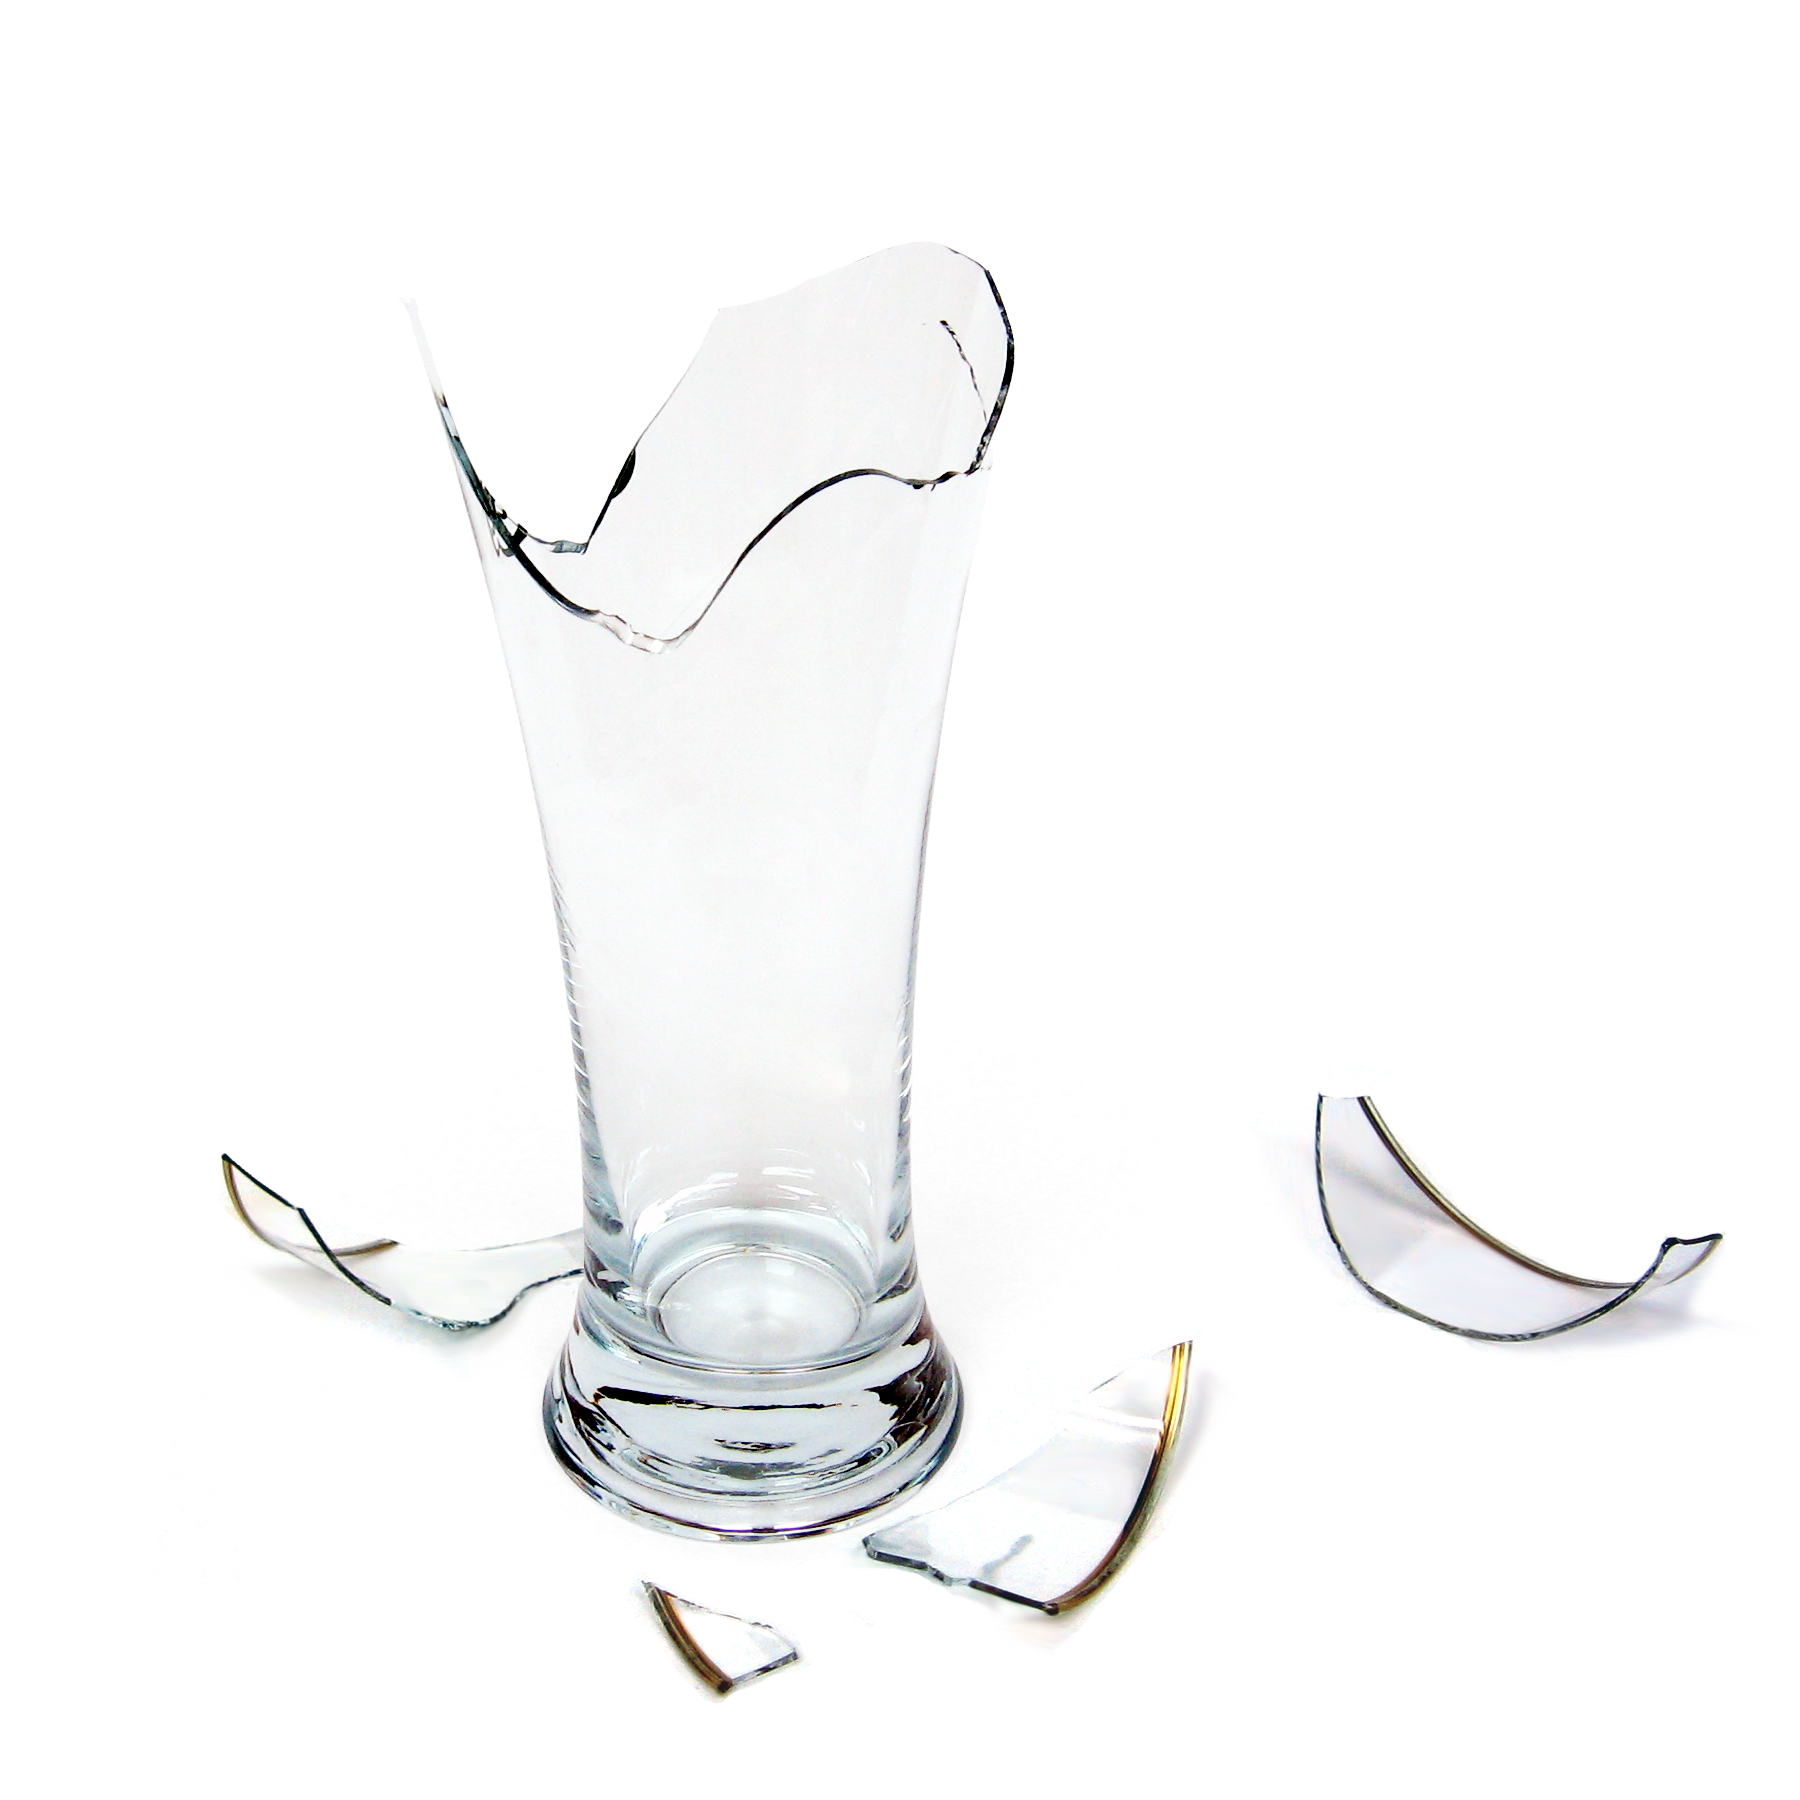 Стекольный стакан. Стеклянные предметы. Разбитая стеклянная ваза. Стеклянные предметы разбитые. Разбитый стакан.